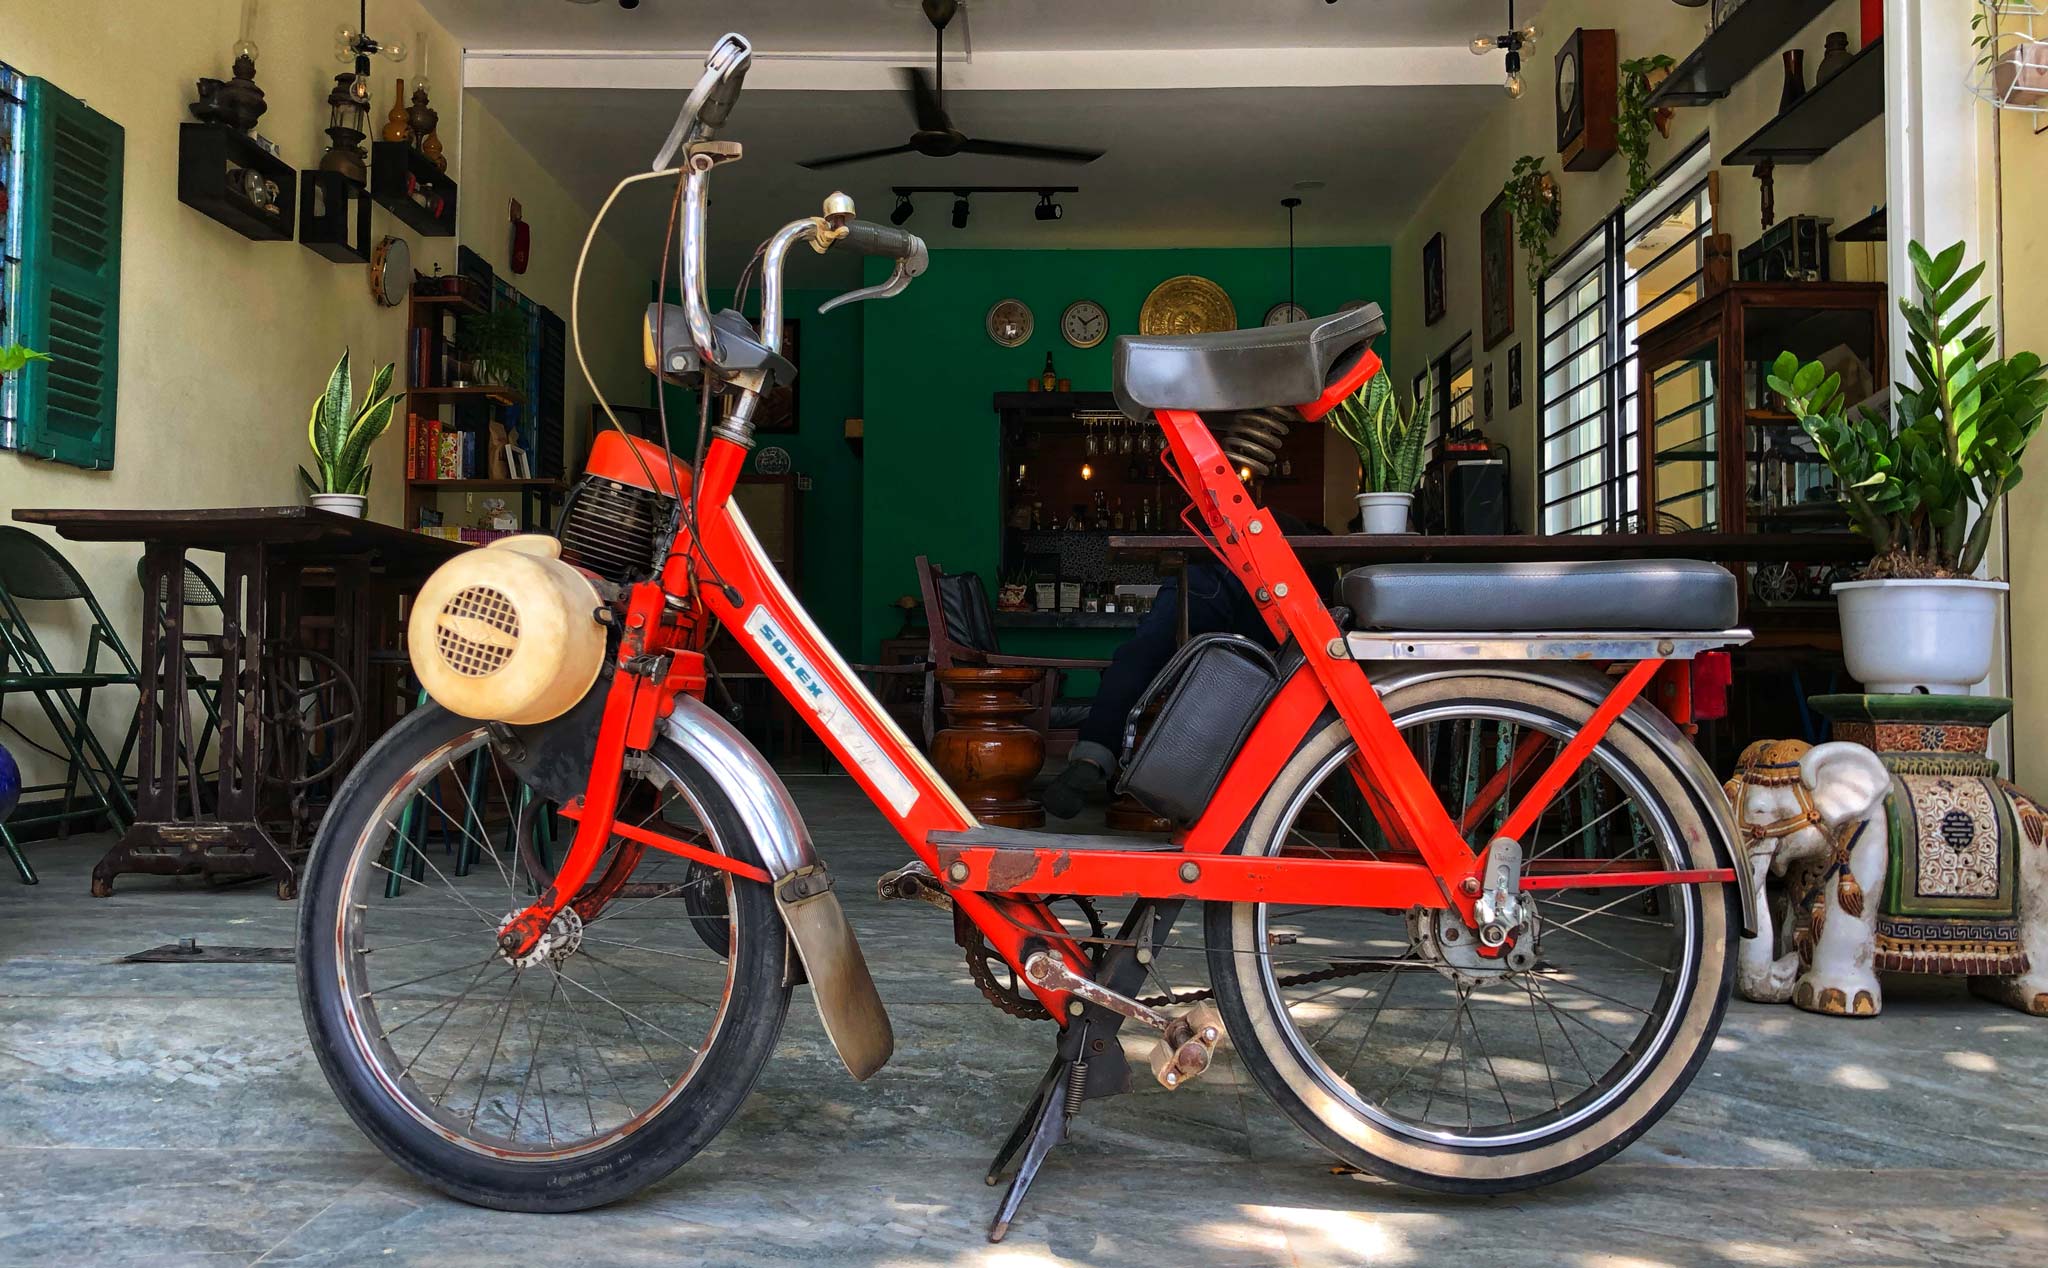 Chia sẻ về chiếc xe đạp cổ Solex 5000 | Viết bởi aquarius